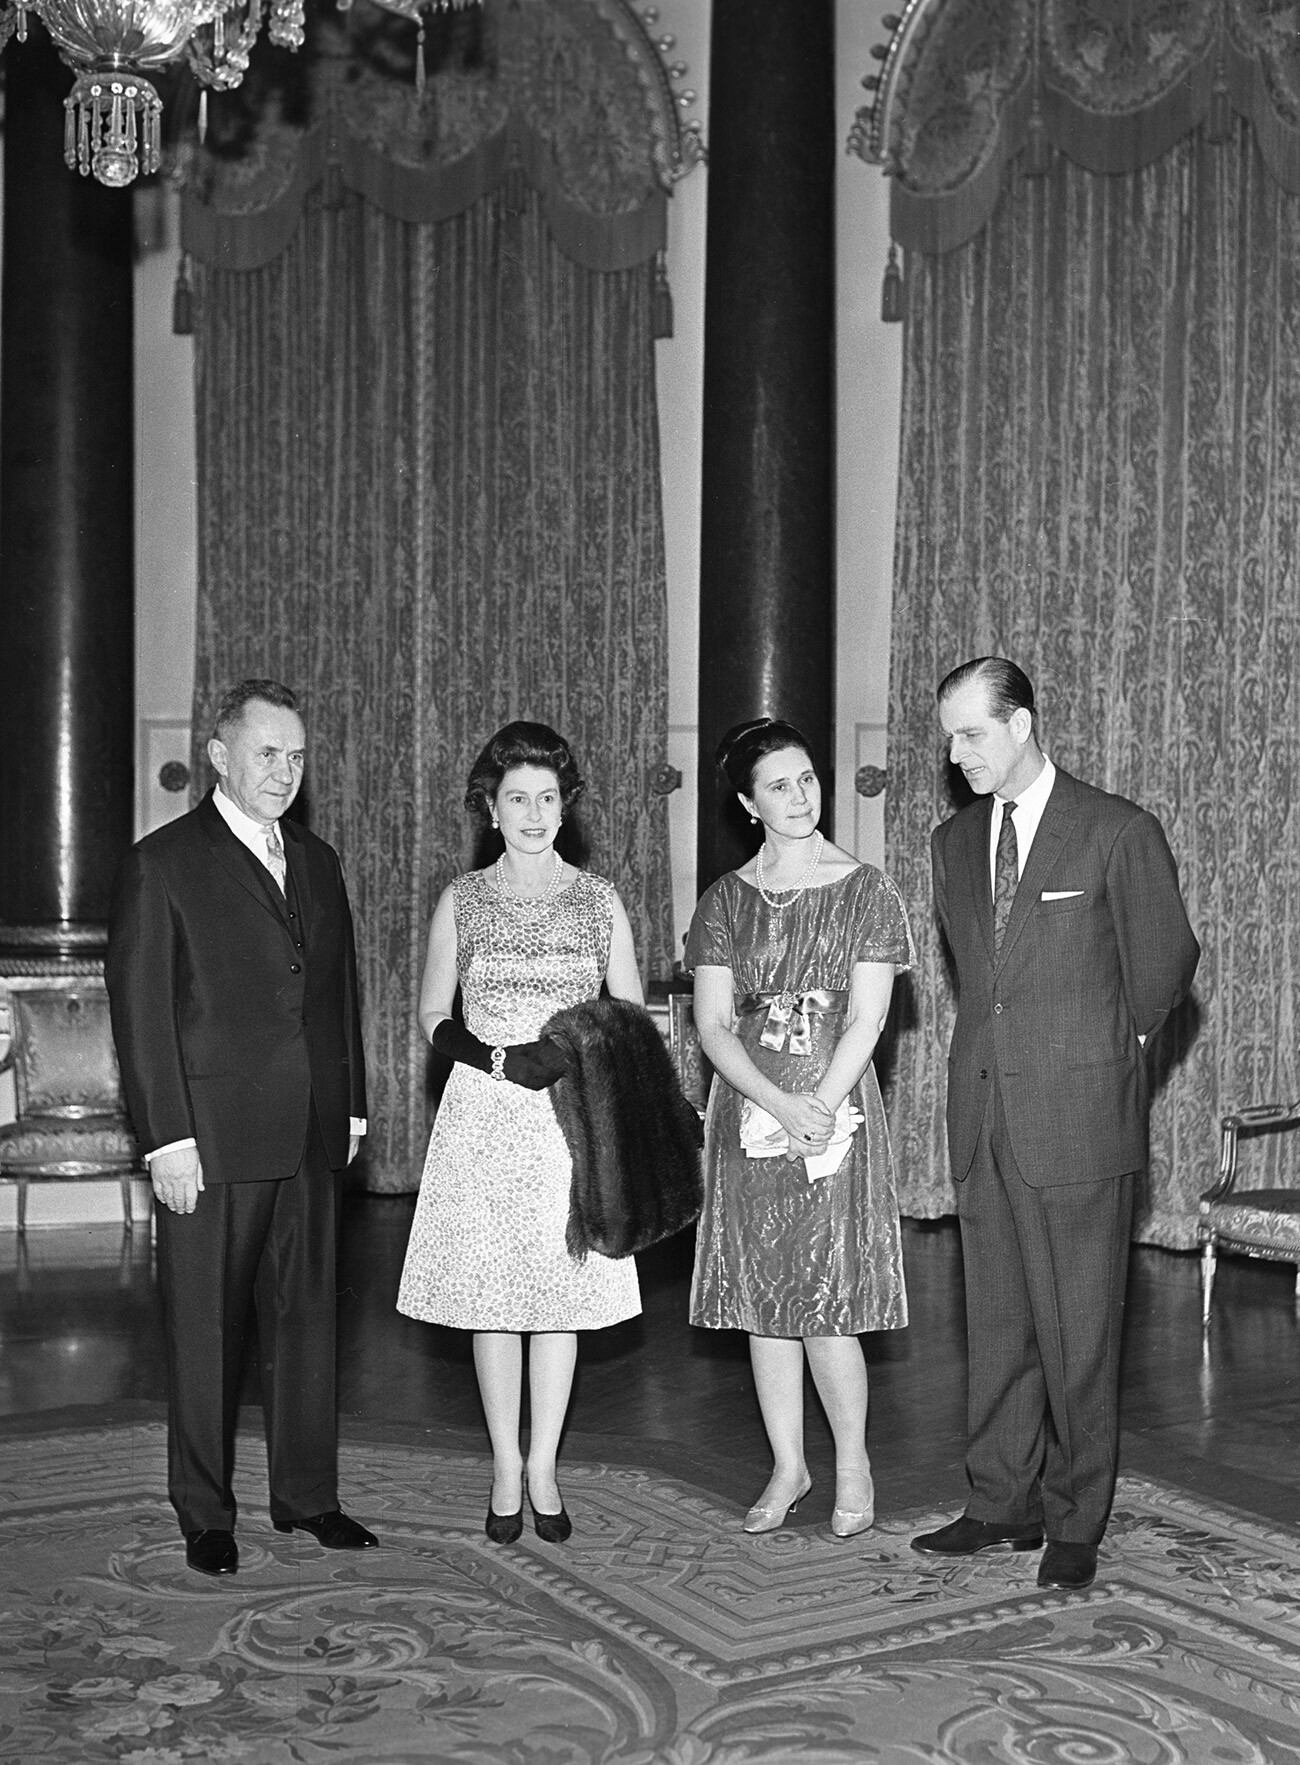 Председателят на Съвета на министрите на СССР Алексей Николаевич Косигин (вляво) със съпругата си (2-ра отдясно) се среща с кралица Елизабет II (2-ра отляво) и принц Филип (вдясно) по време на посещението си в Обединеното кралство.